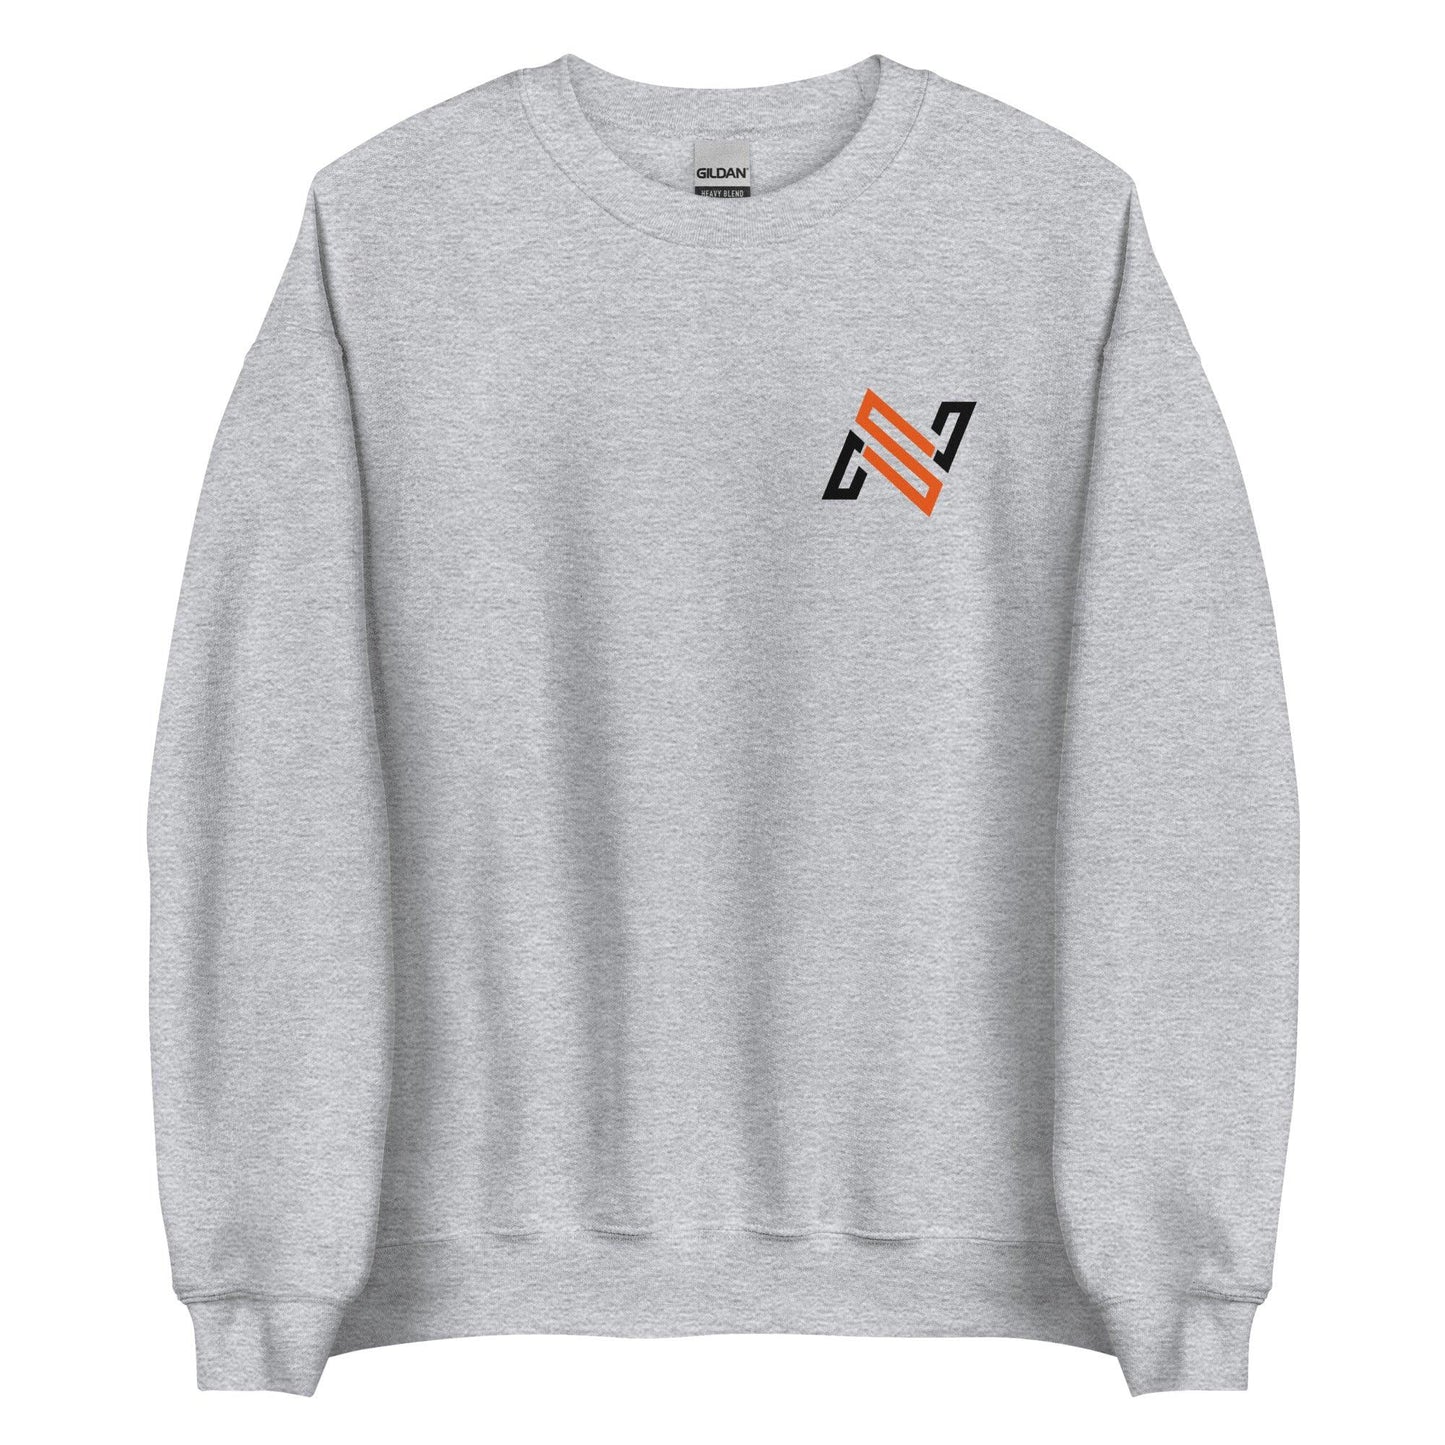 Nick Swiney “NS” Sweatshirt - Fan Arch